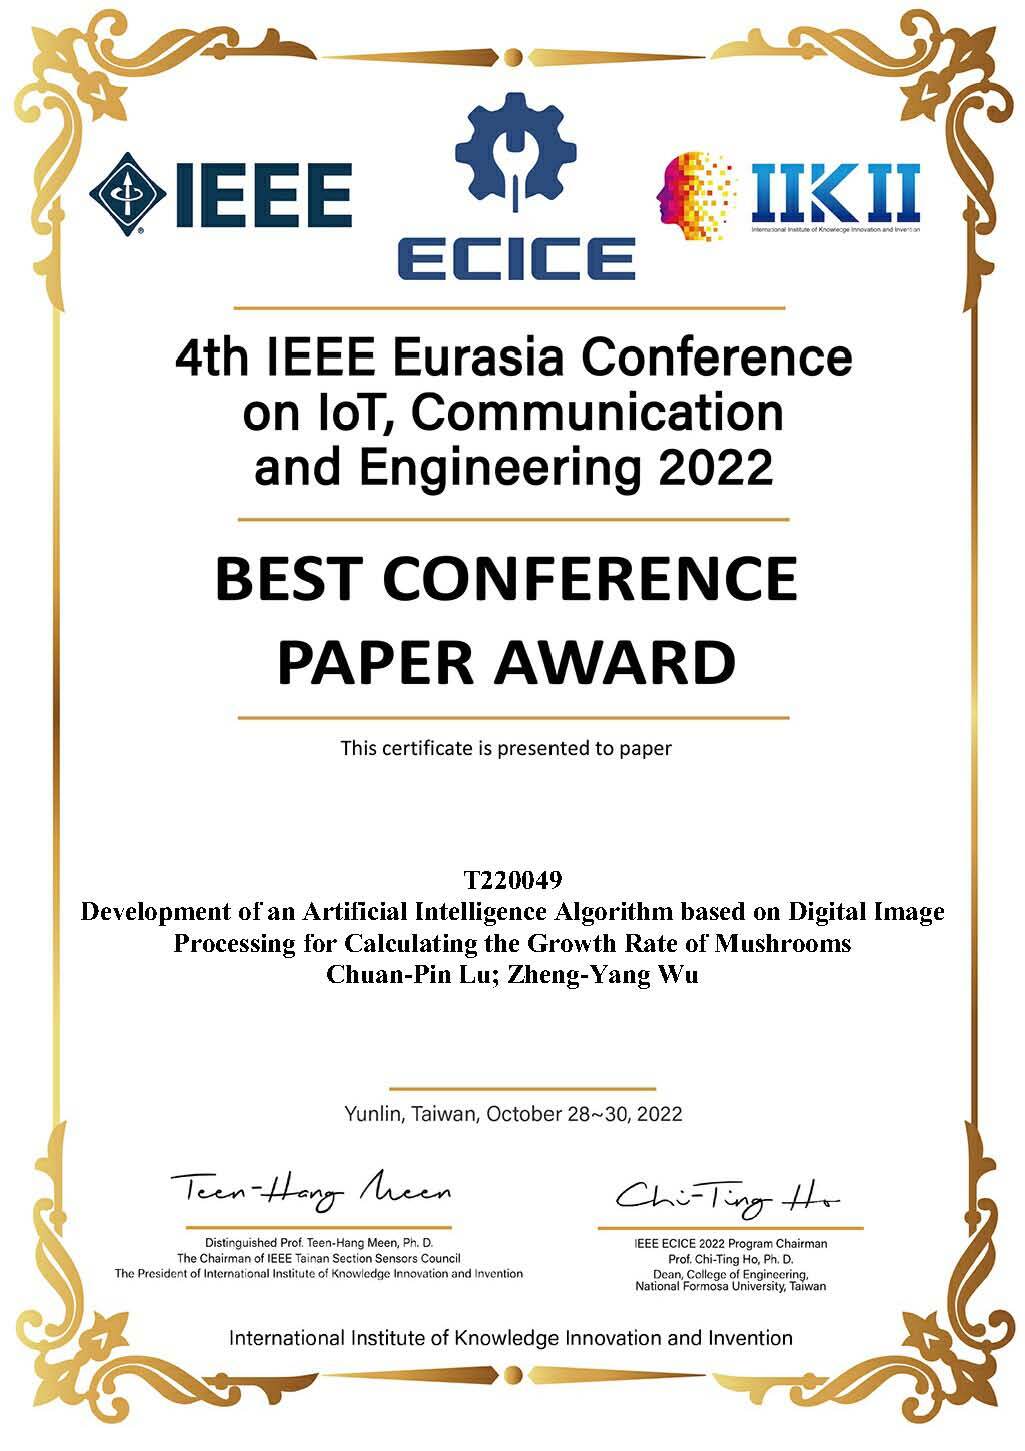 【榮譽】賀～獲「最佳會議論文獎」呂全斌老師參加4th IEEE Eurasia Conference on IoT